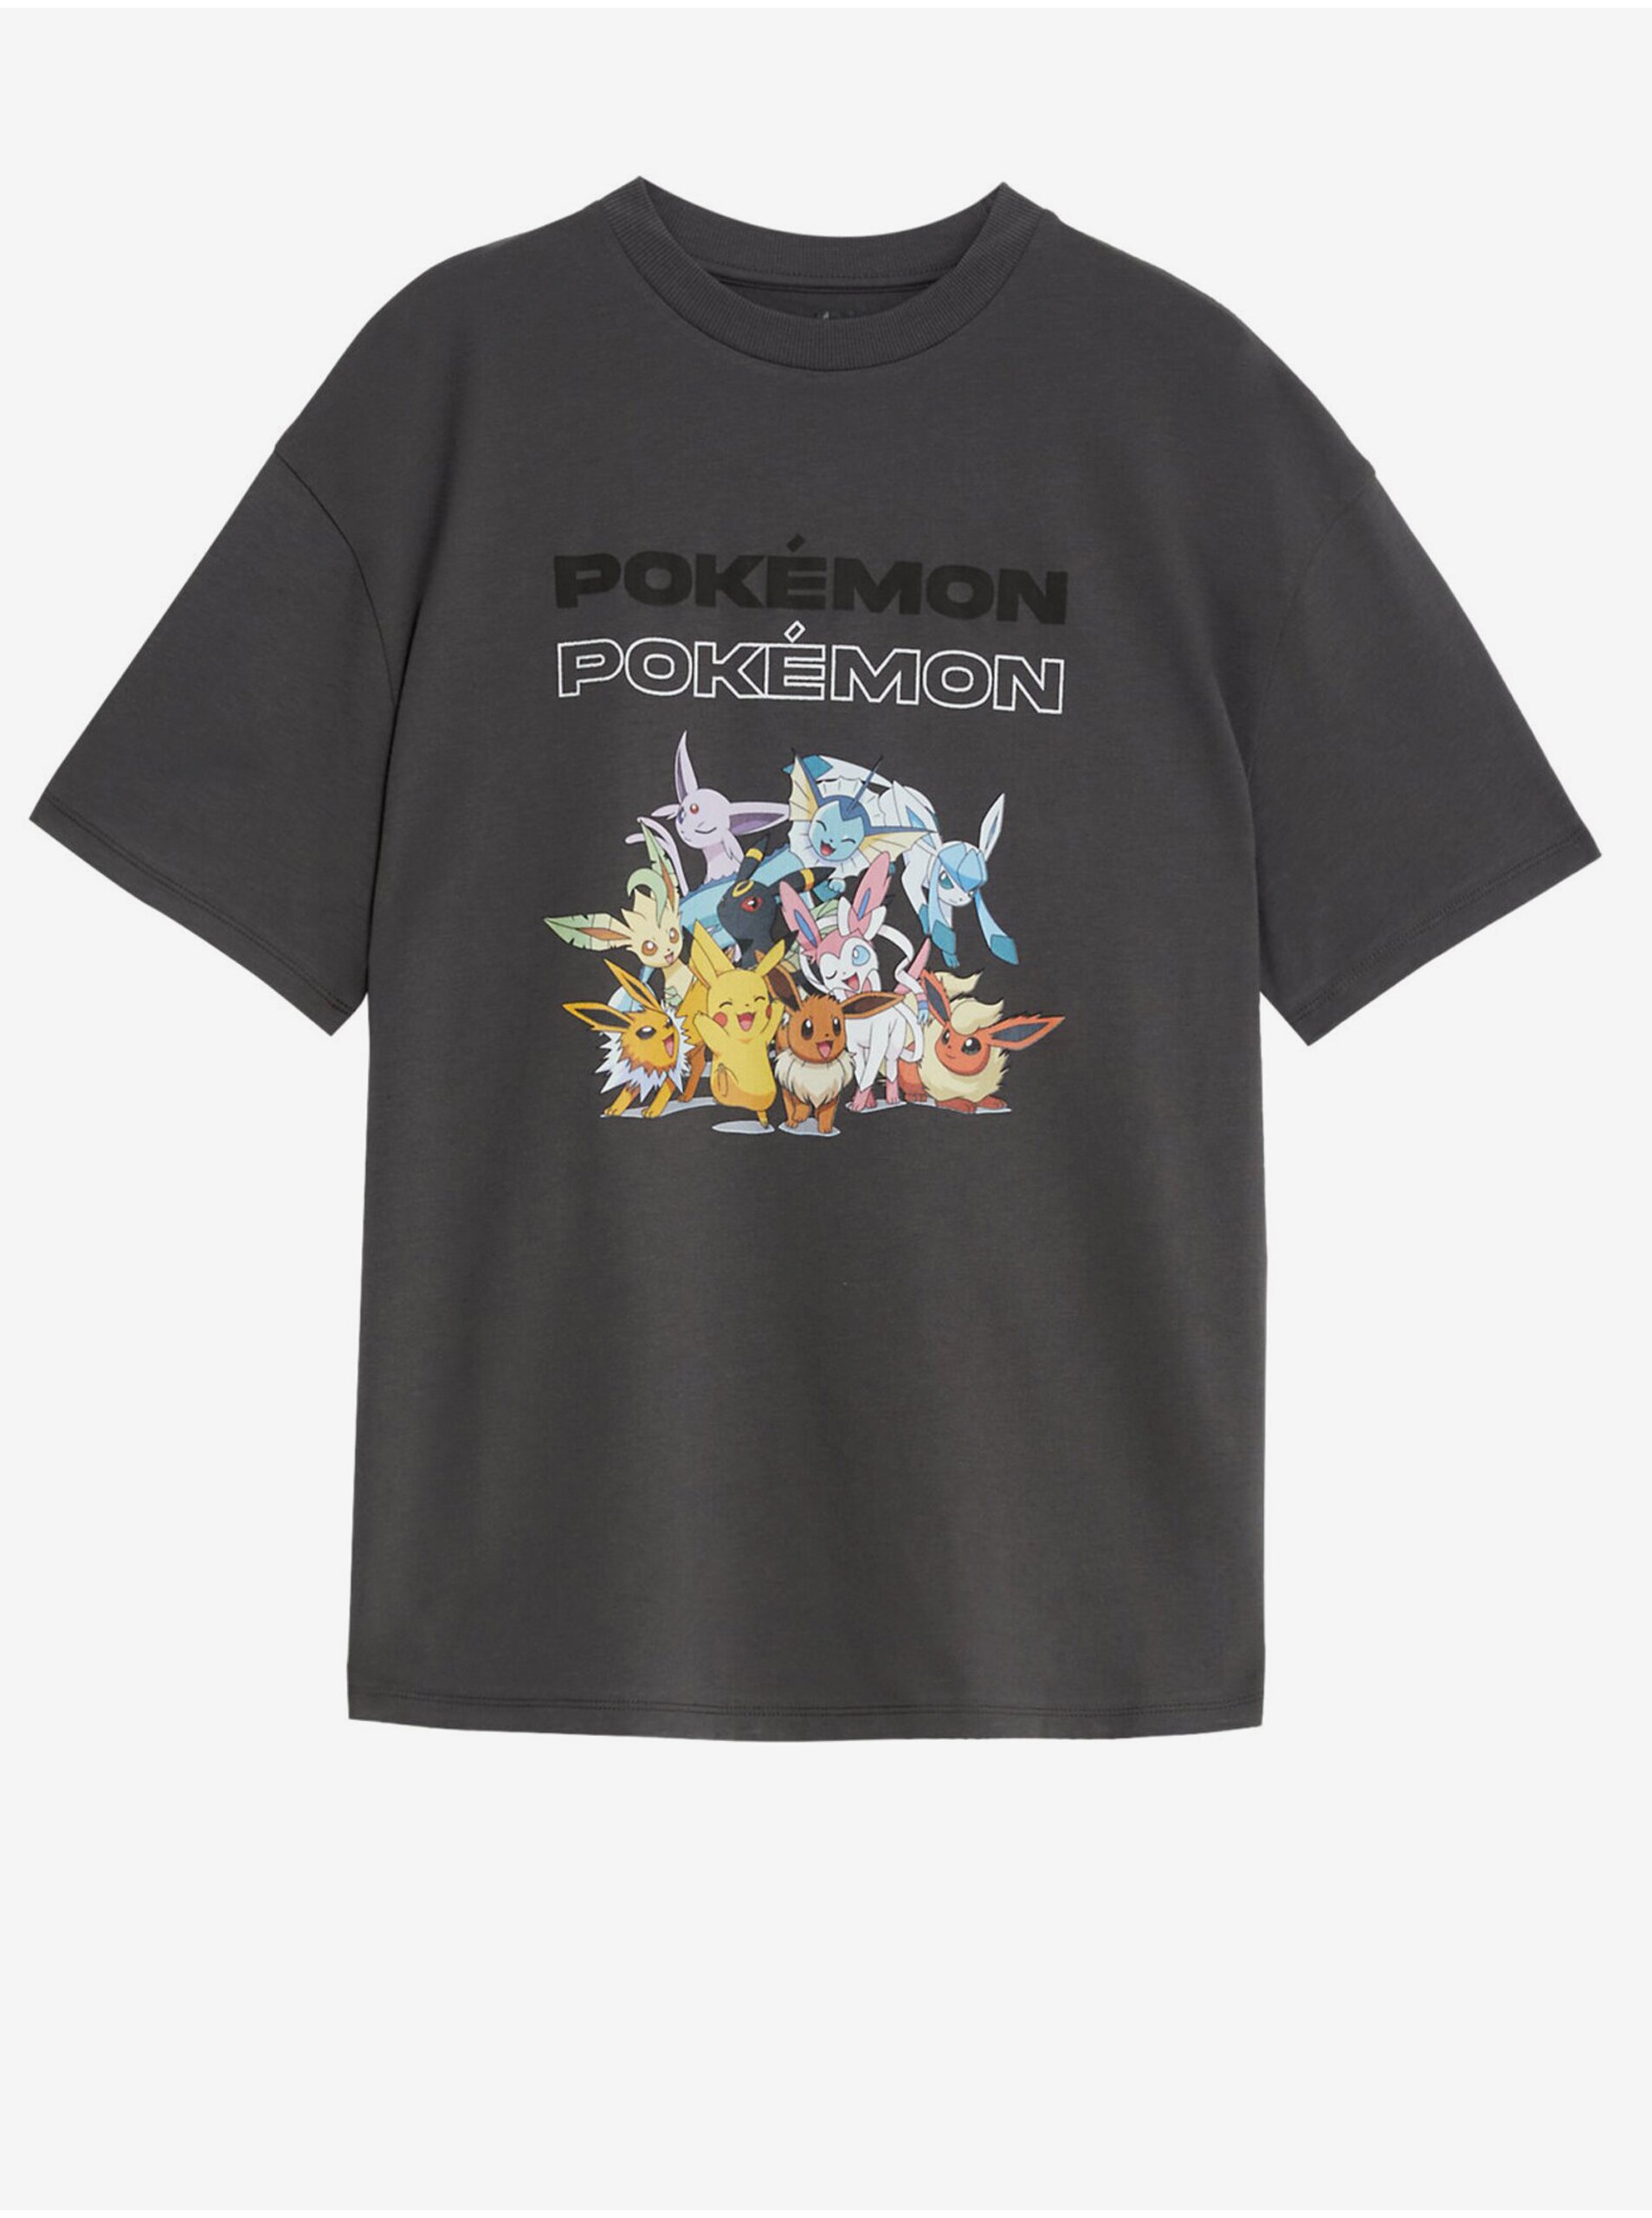 Lacno Tmavosivé chlapčenské tričko s motívom Marks & Spencer Pokémon™